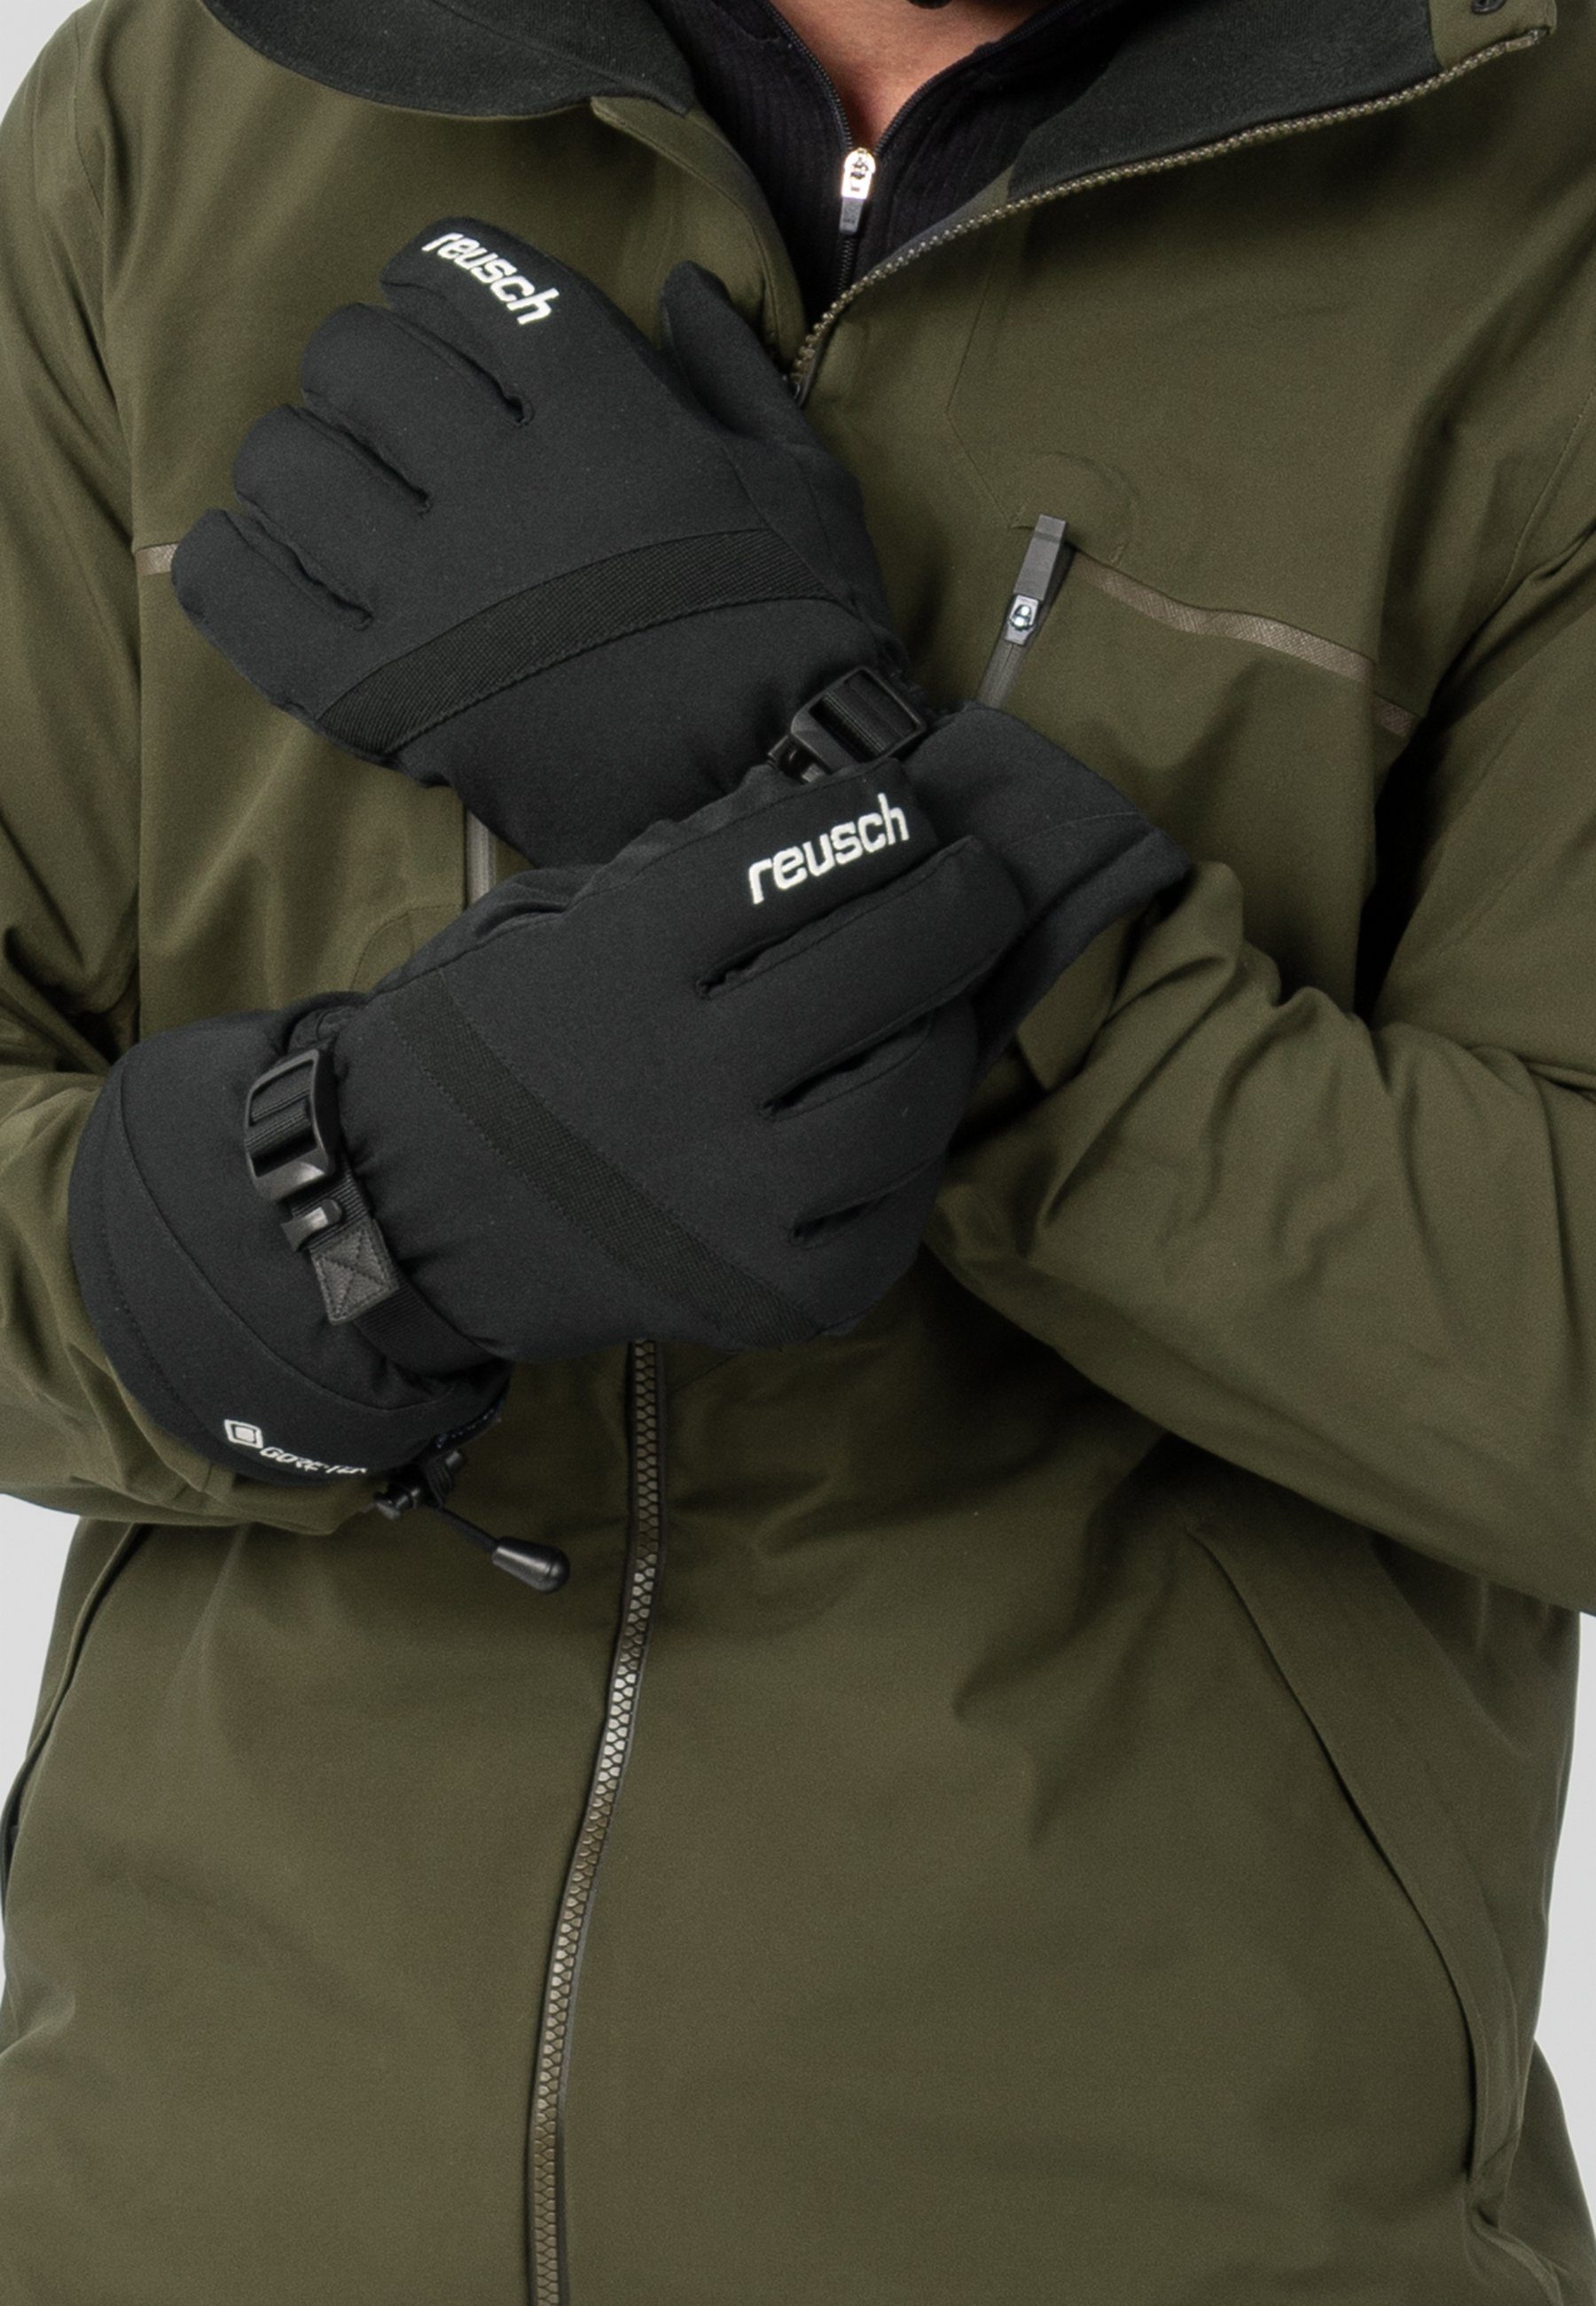 Reusch Skihandschuhe Glove atmungsaktivem GORE-TEX aus und Winter Material Warm wasserdichtem